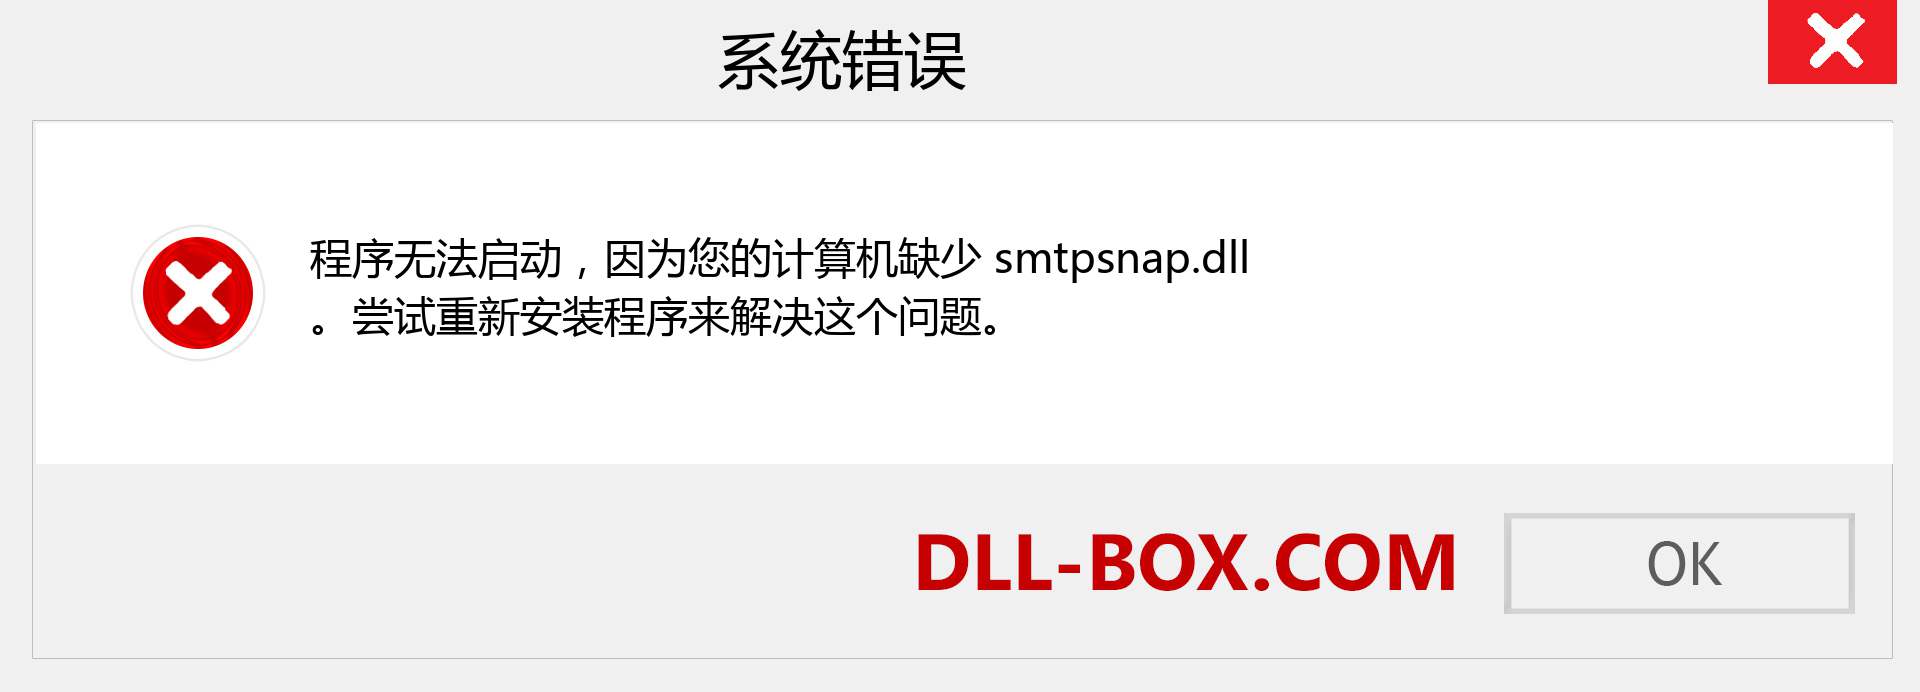 smtpsnap.dll 文件丢失？。 适用于 Windows 7、8、10 的下载 - 修复 Windows、照片、图像上的 smtpsnap dll 丢失错误